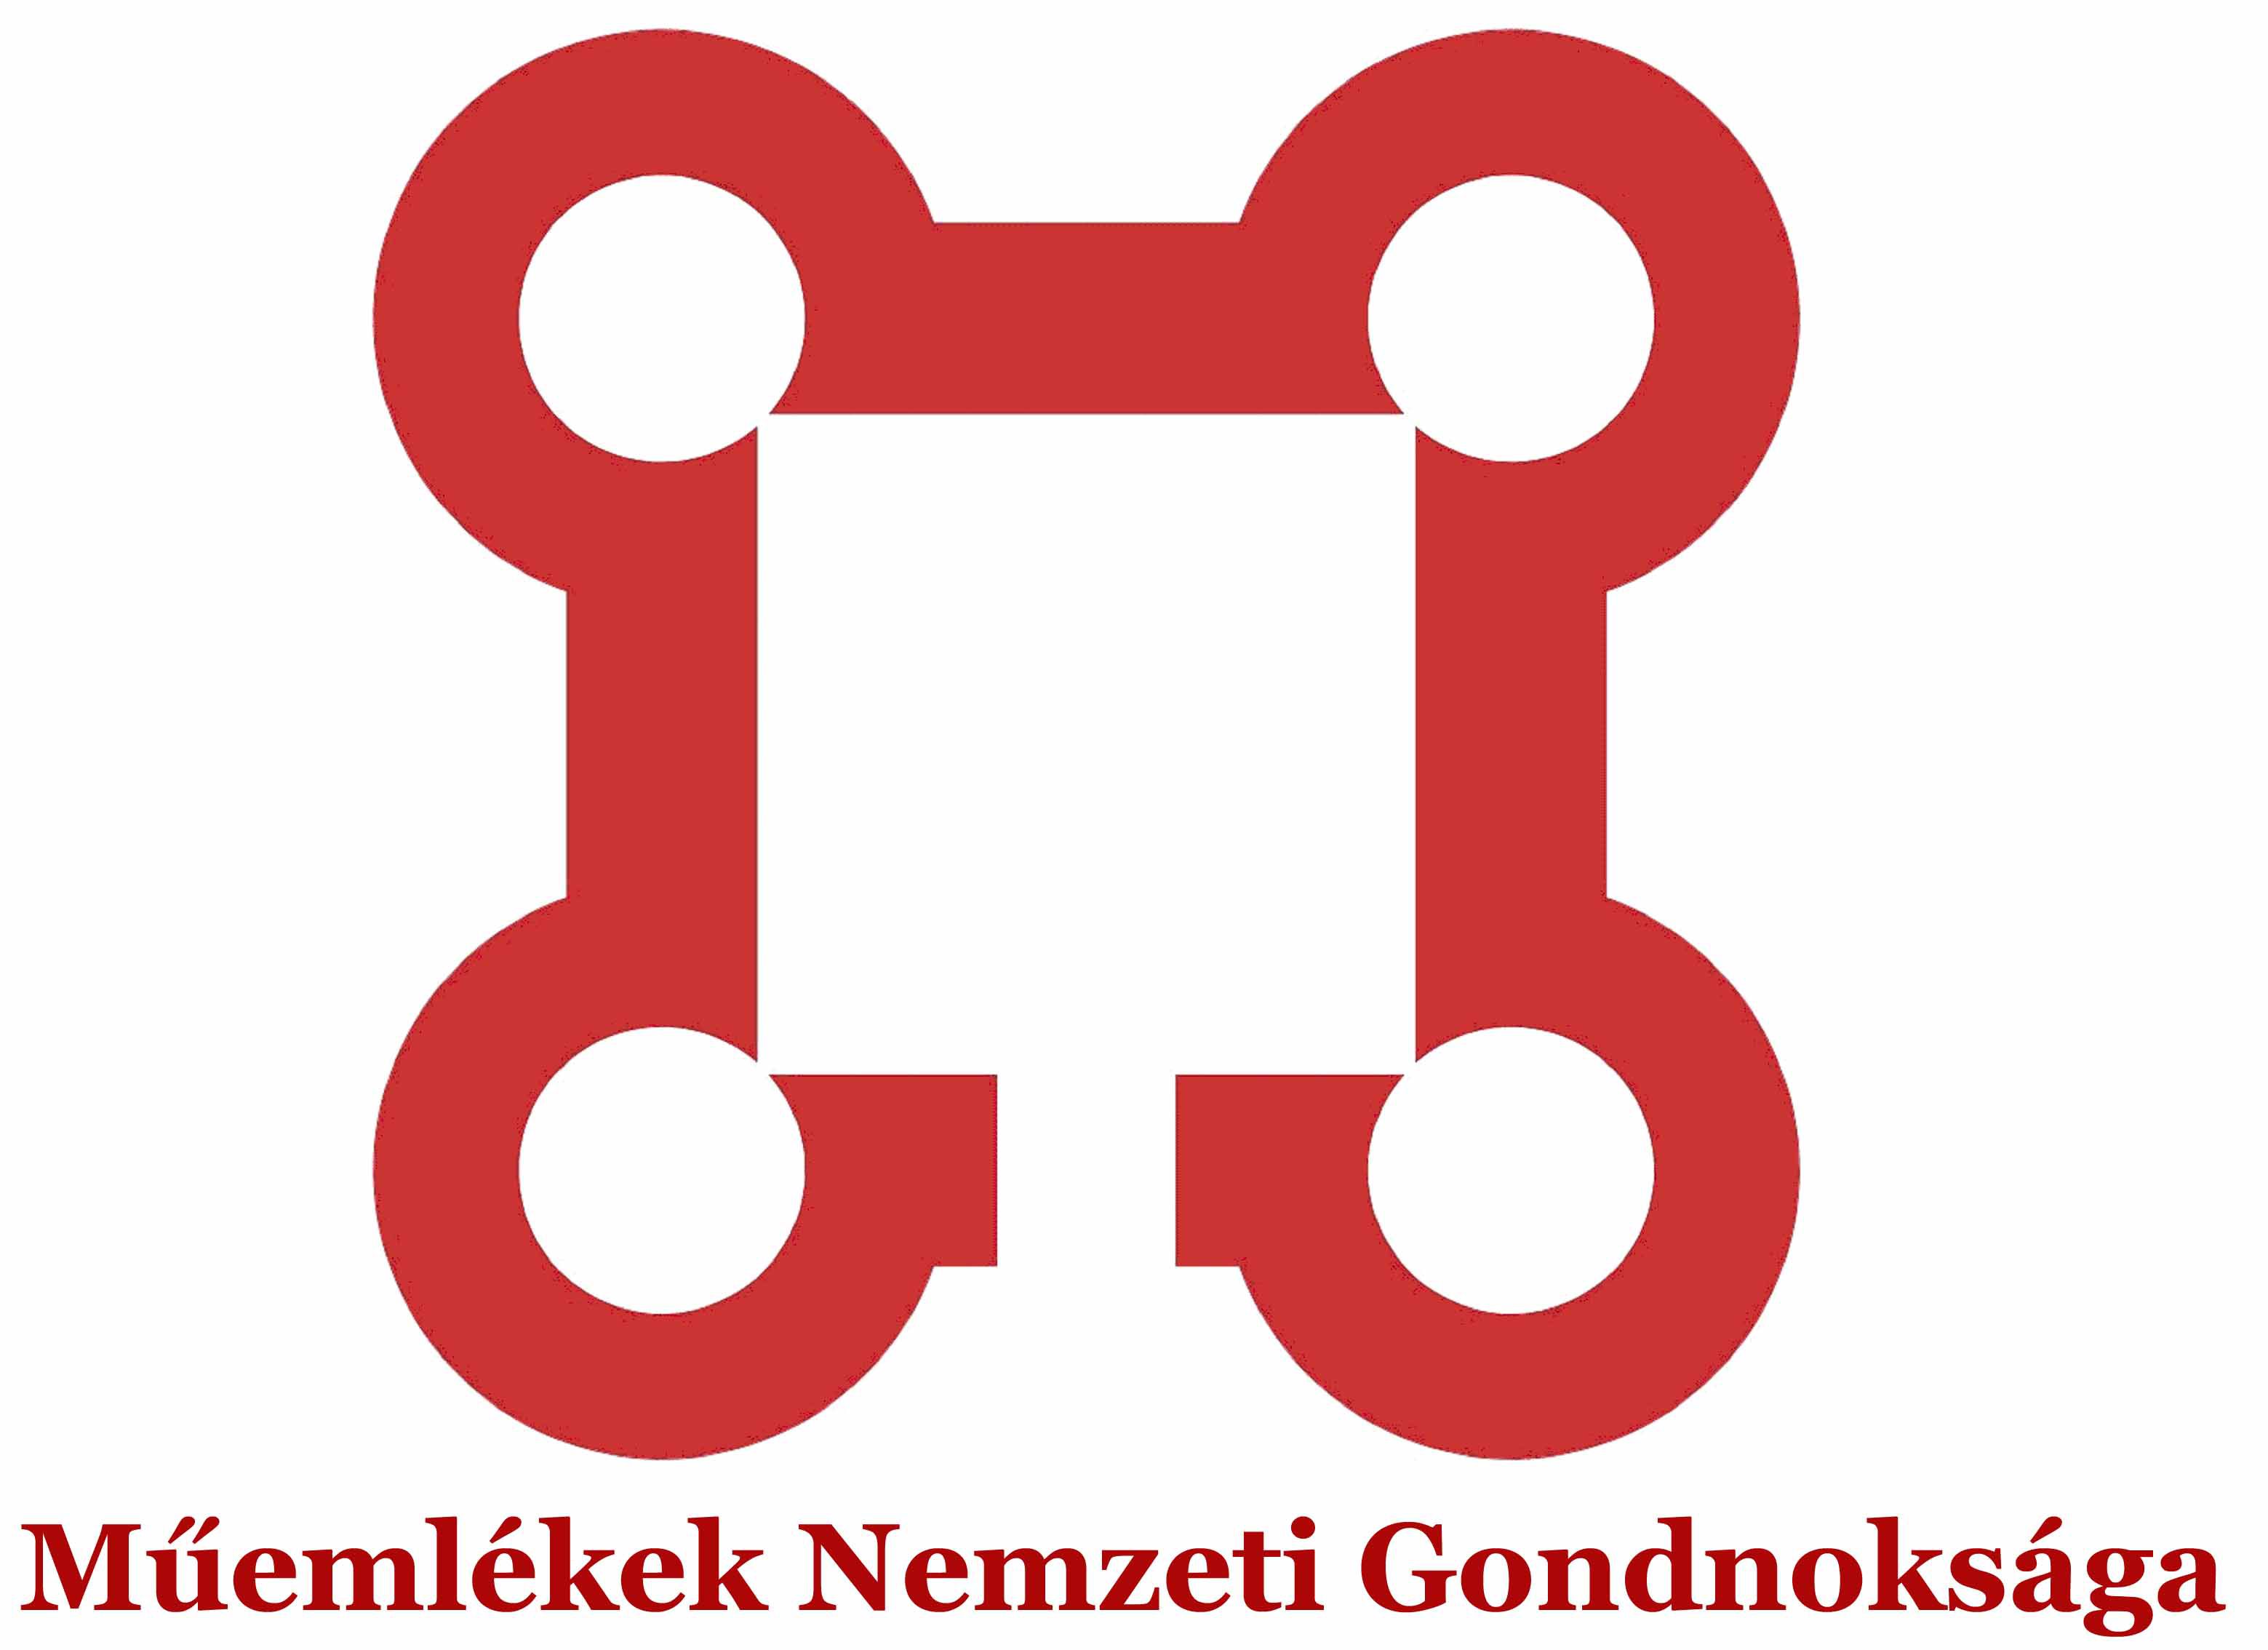 Műemlékek Nemzeti Gondnoksága logo